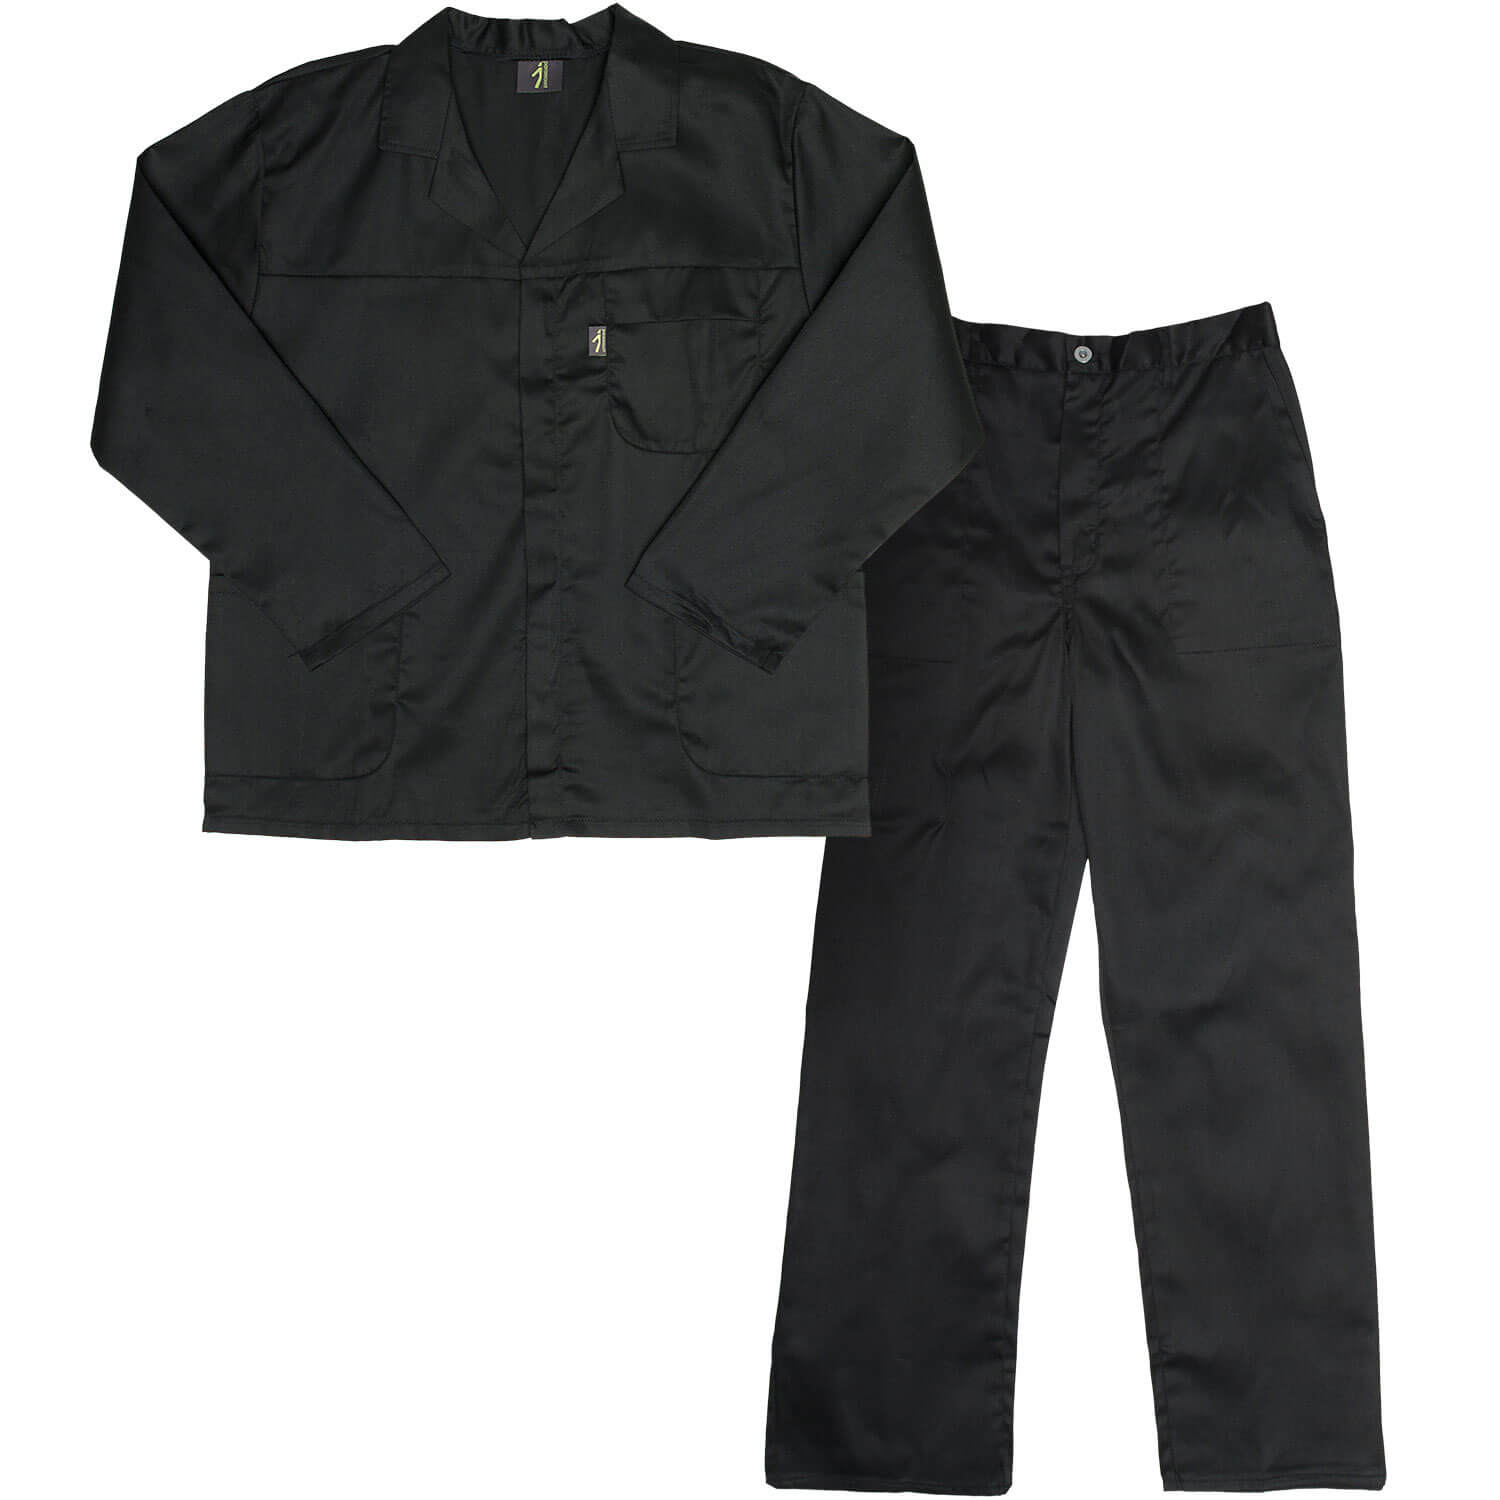 3333BLPC Paramount Polycotton Conti Suit Black